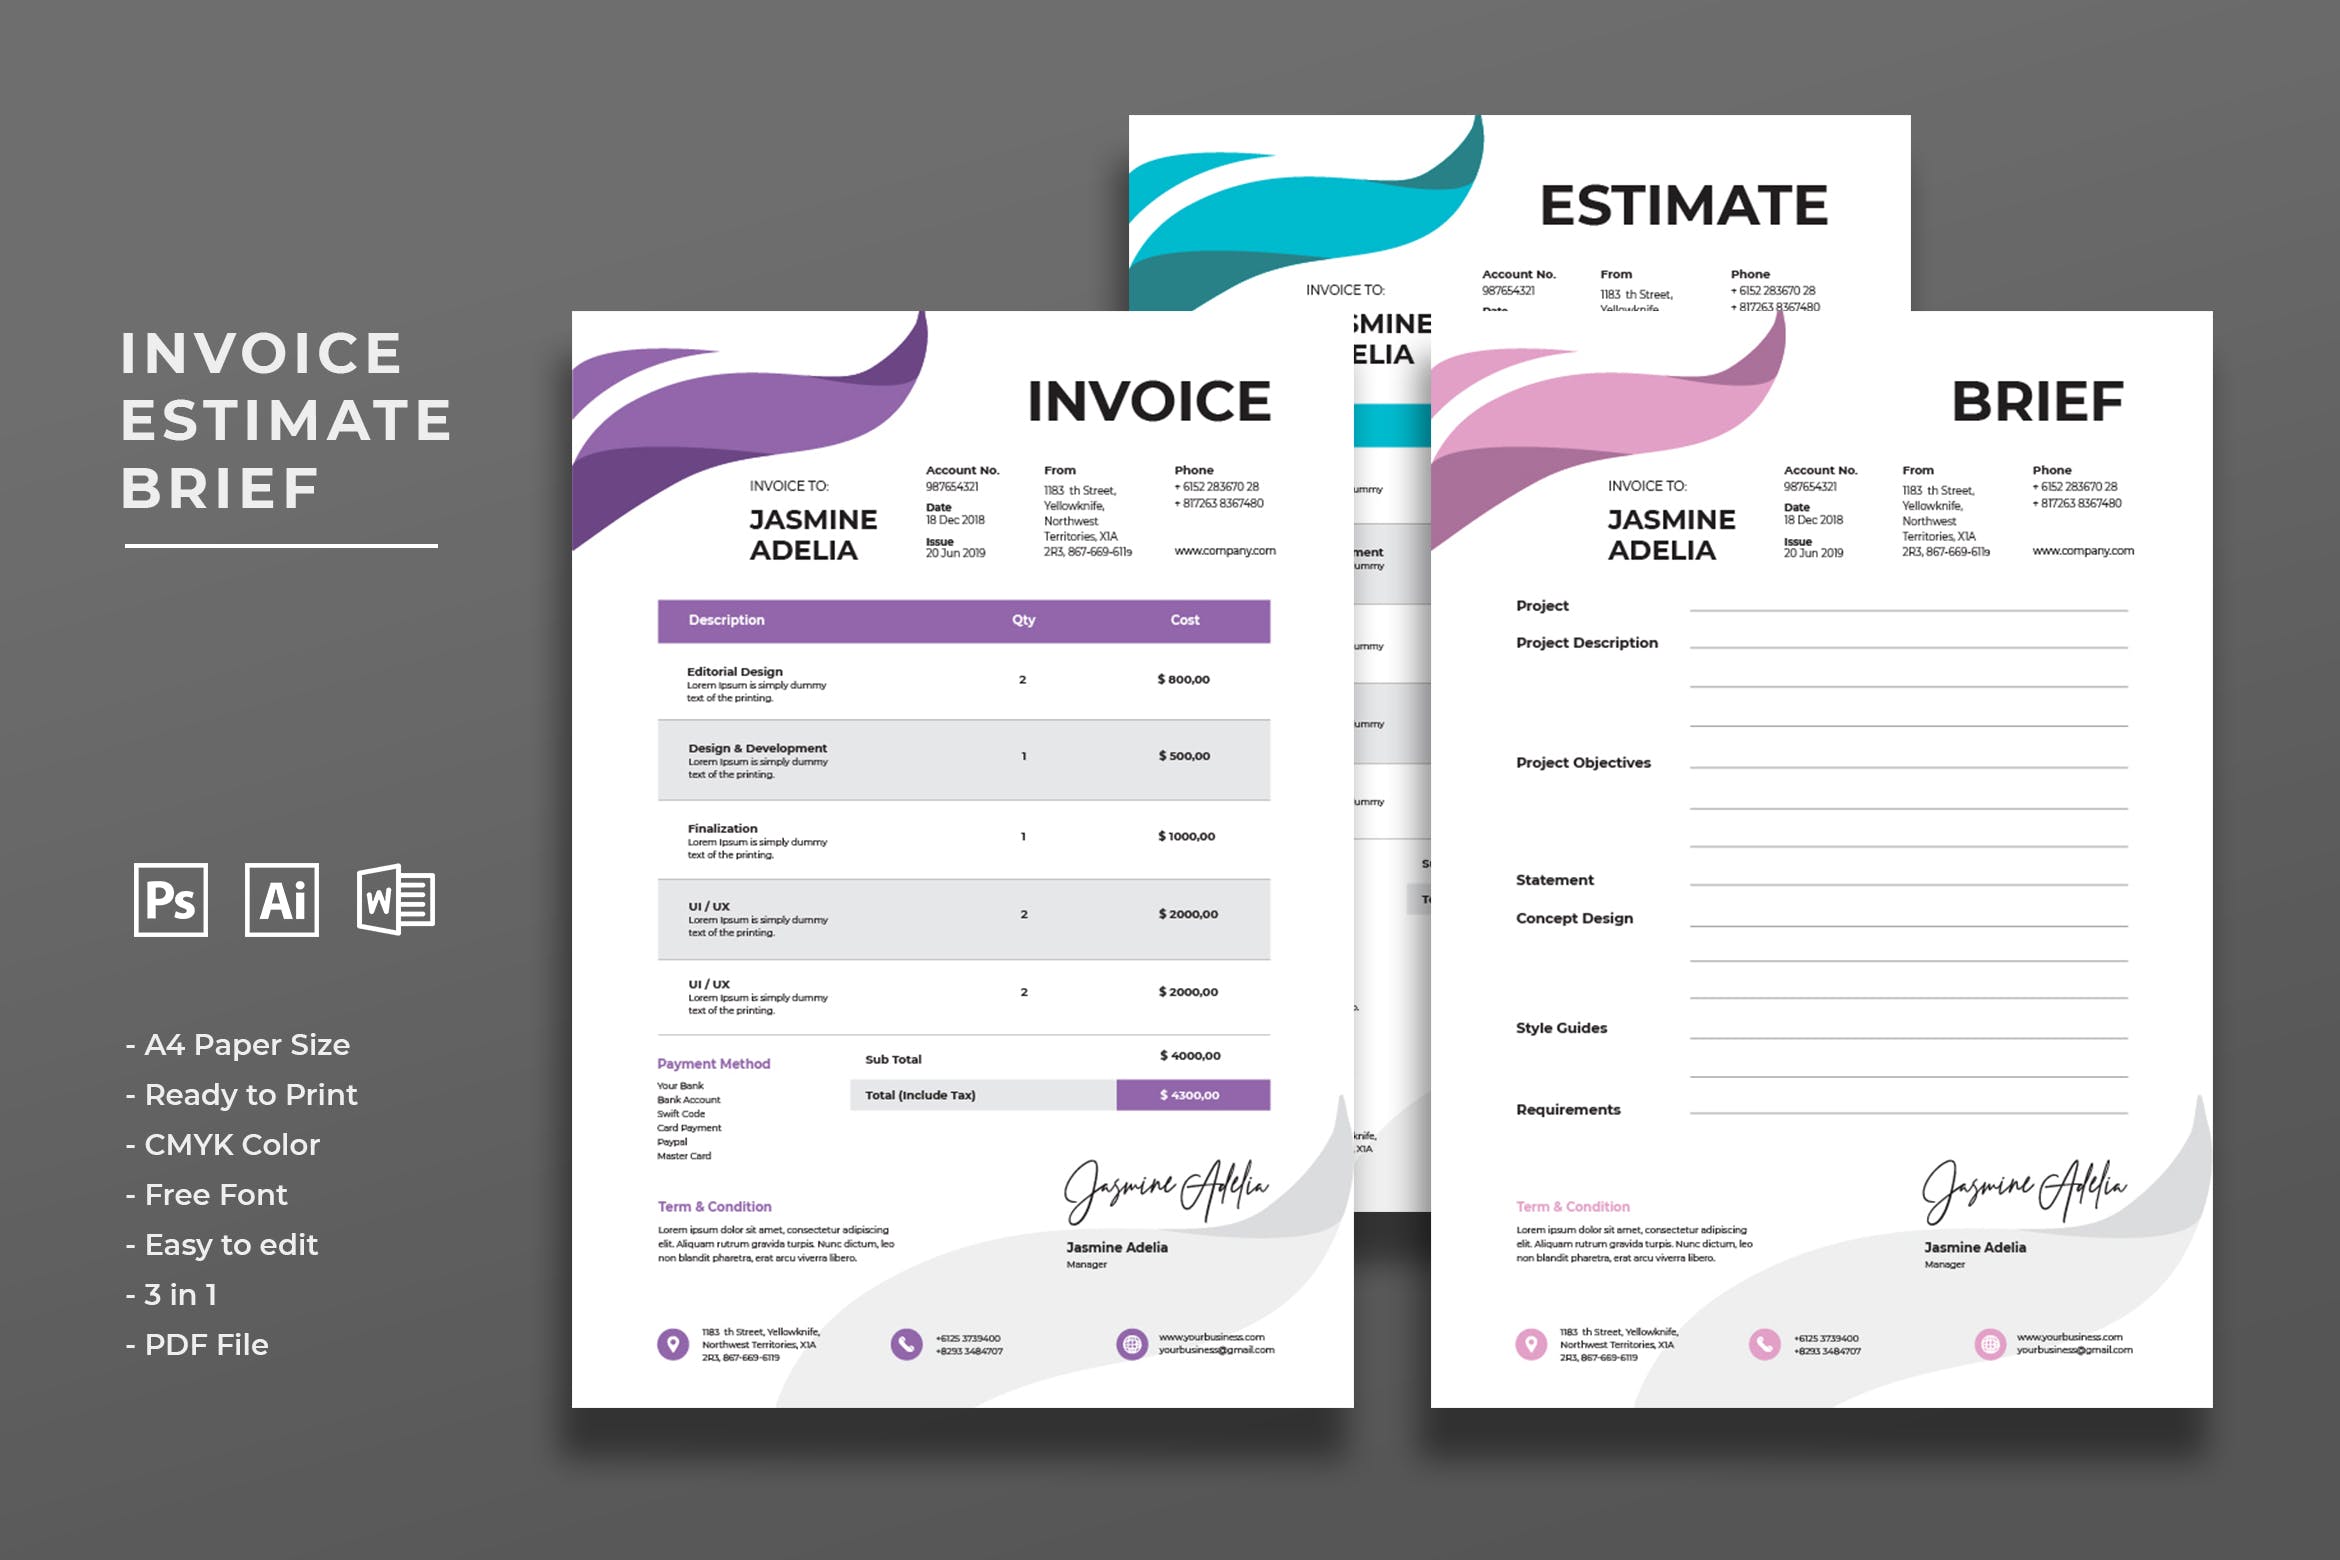 经典商用账单发票单据设计模板 Invoice Estimate Brief插图